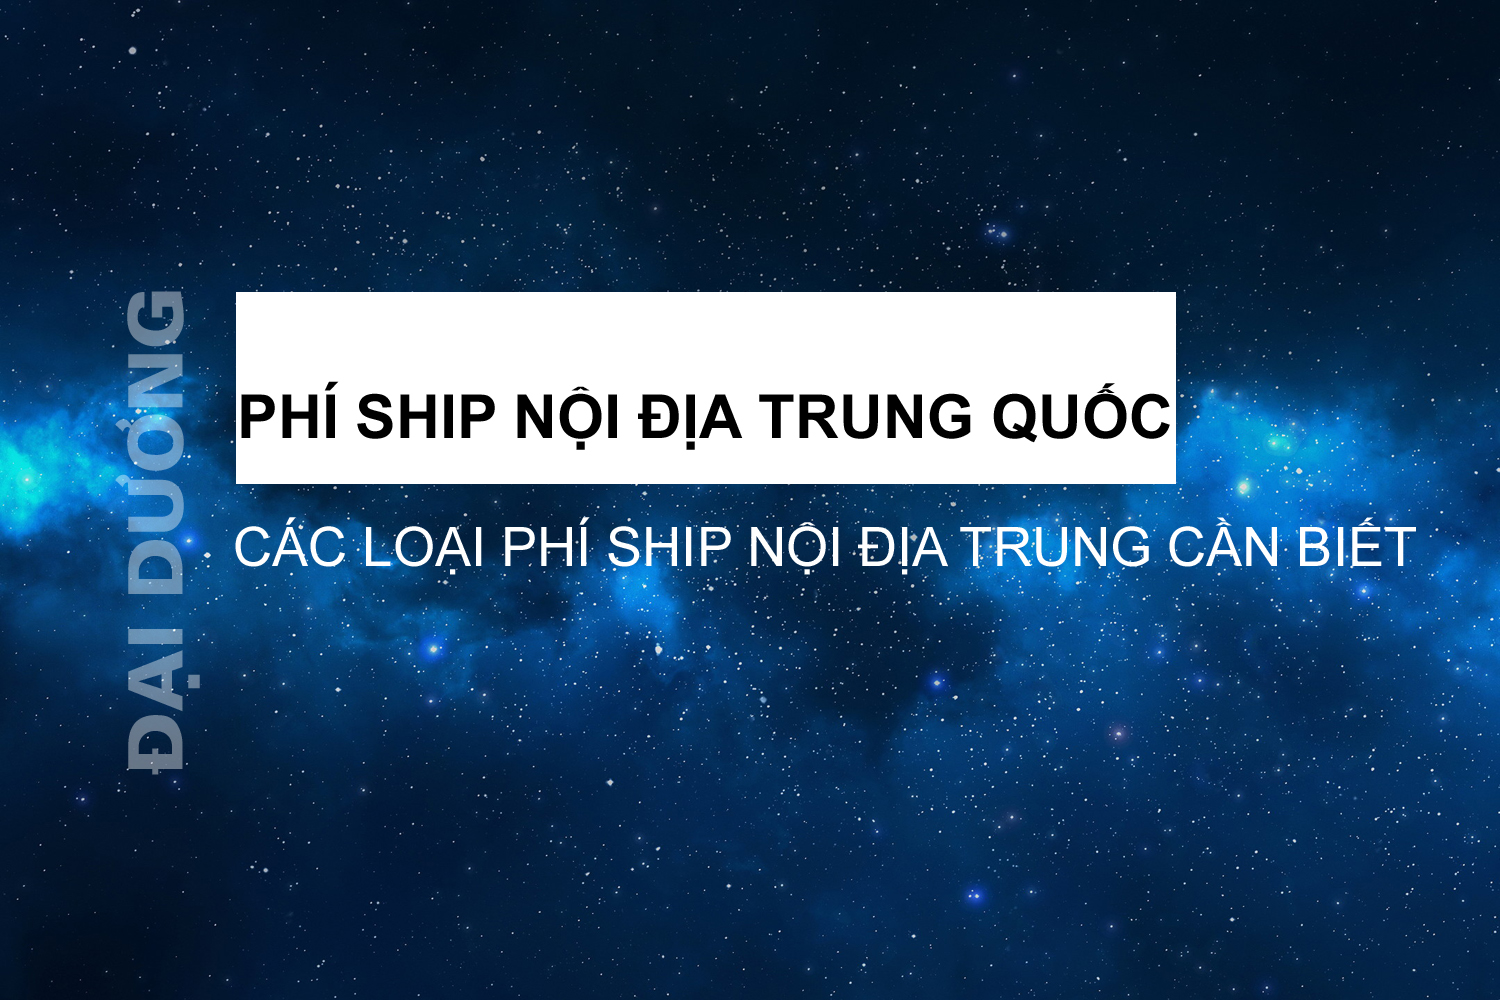 phi-ship-noi-dia-trung-quoc.jpg